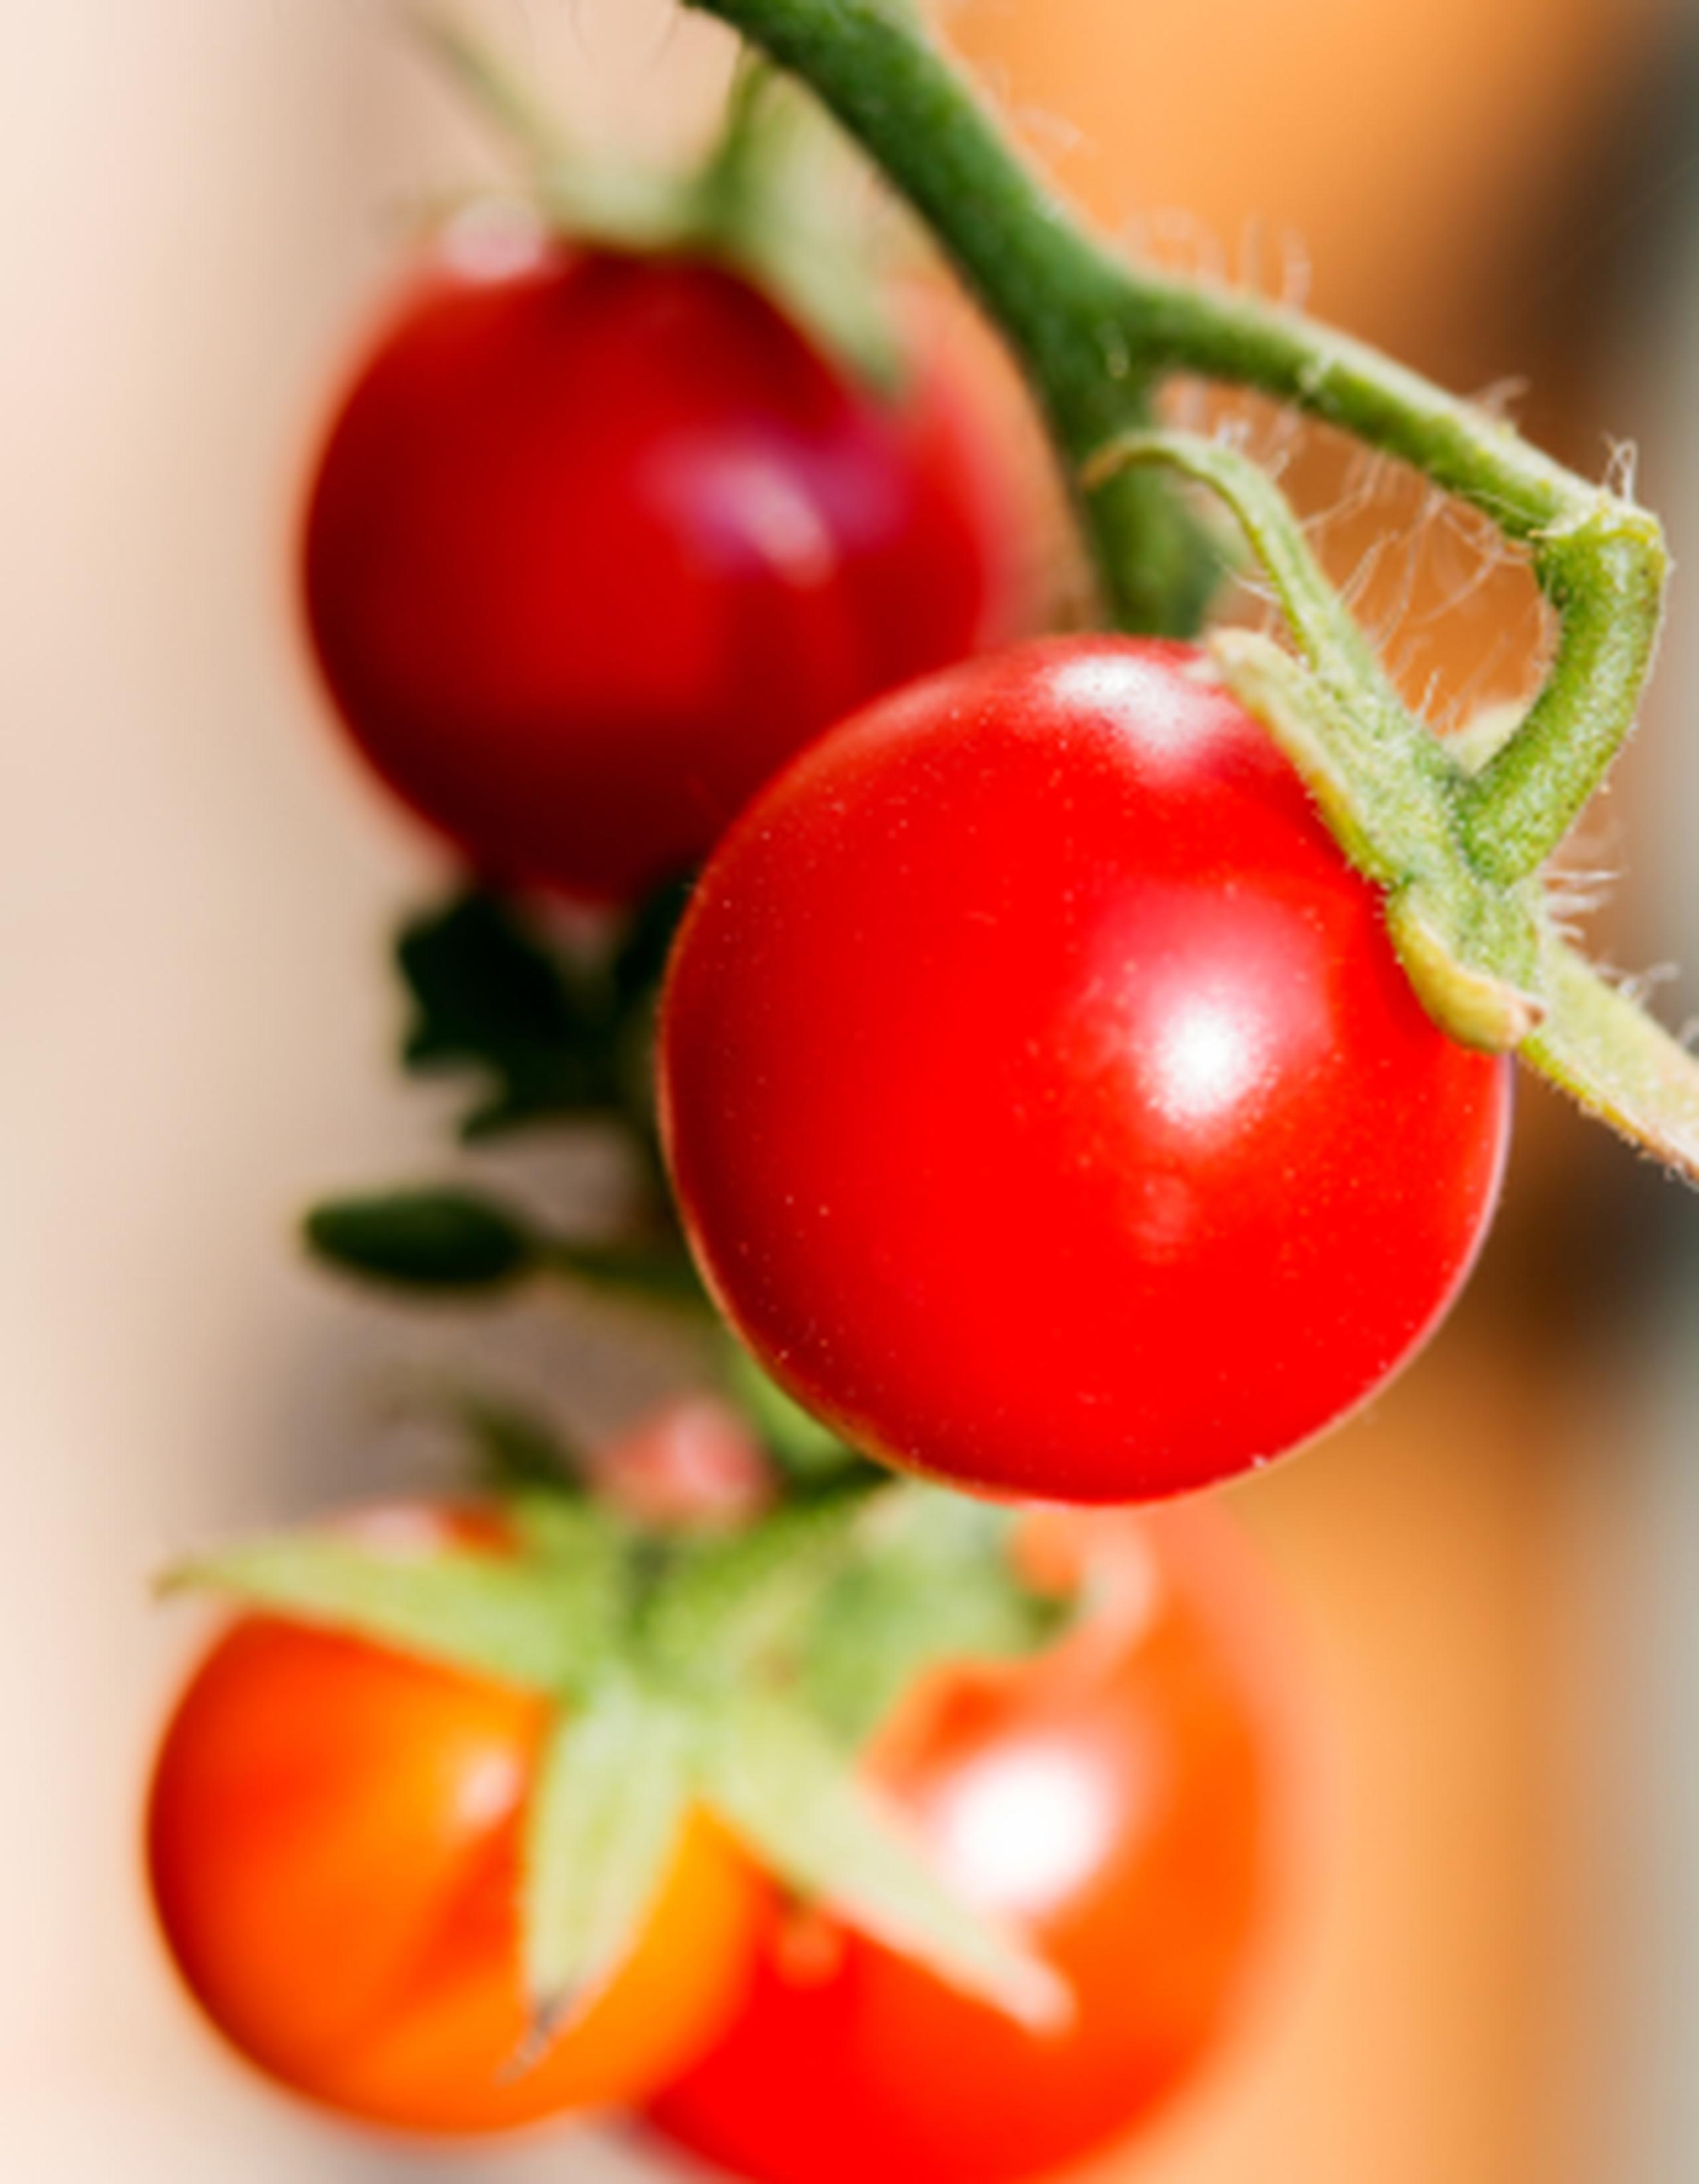 Los tomates crecieron, pero no produjeron frutas porque la luz no era lo bastante brillante y la temperatura era demasiado baja. (Archivo)